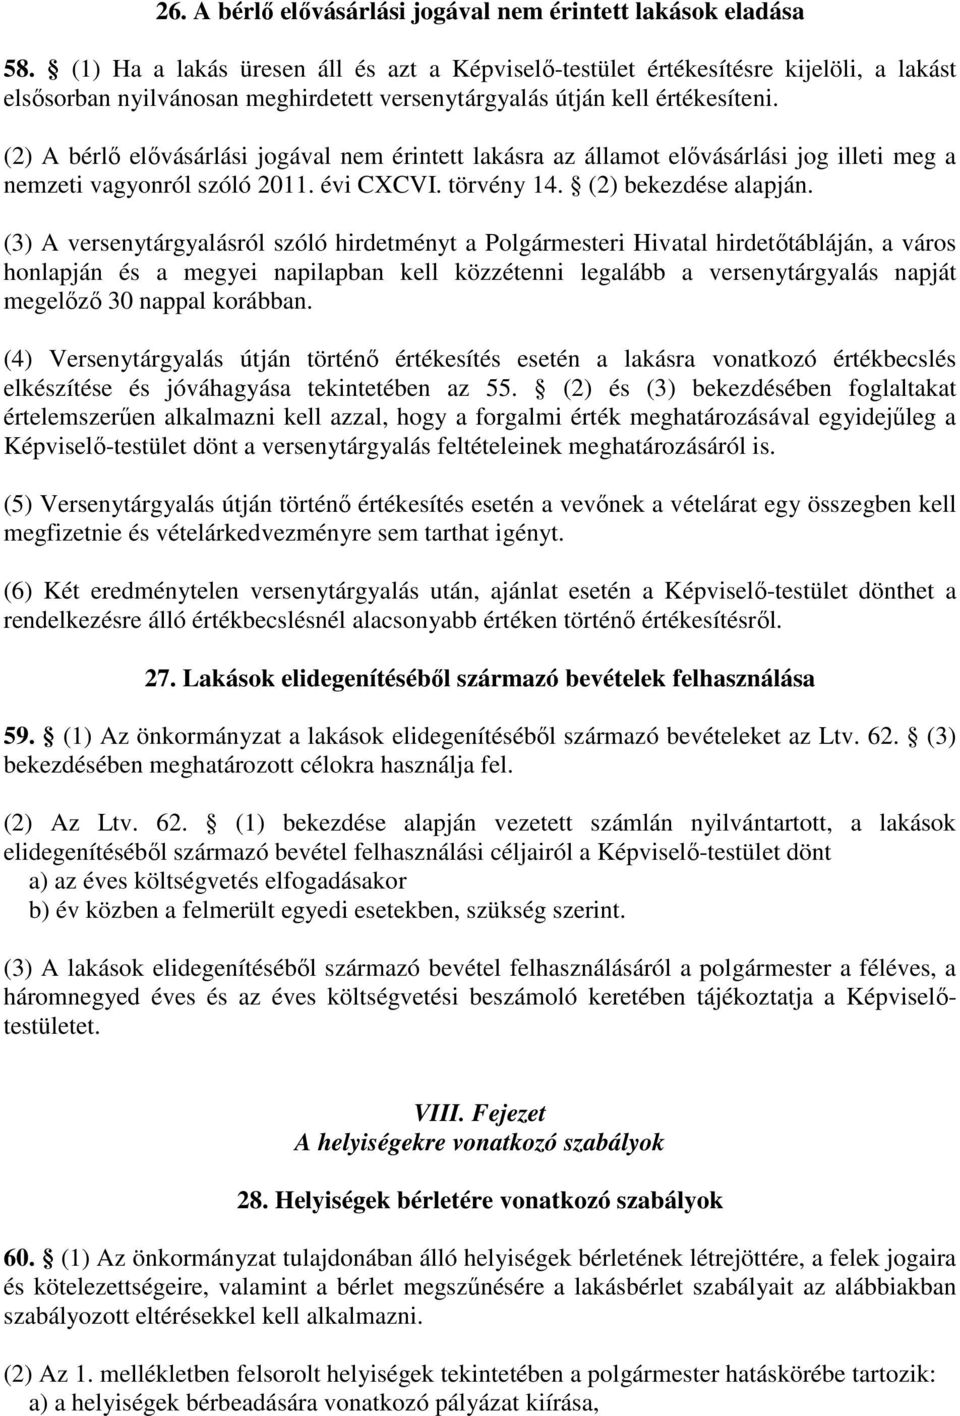 (2) A bérlı elıvásárlási jogával nem érintett lakásra az államot elıvásárlási jog illeti meg a nemzeti vagyonról szóló 2011. évi CXCVI. törvény 14. (2) bekezdése alapján.